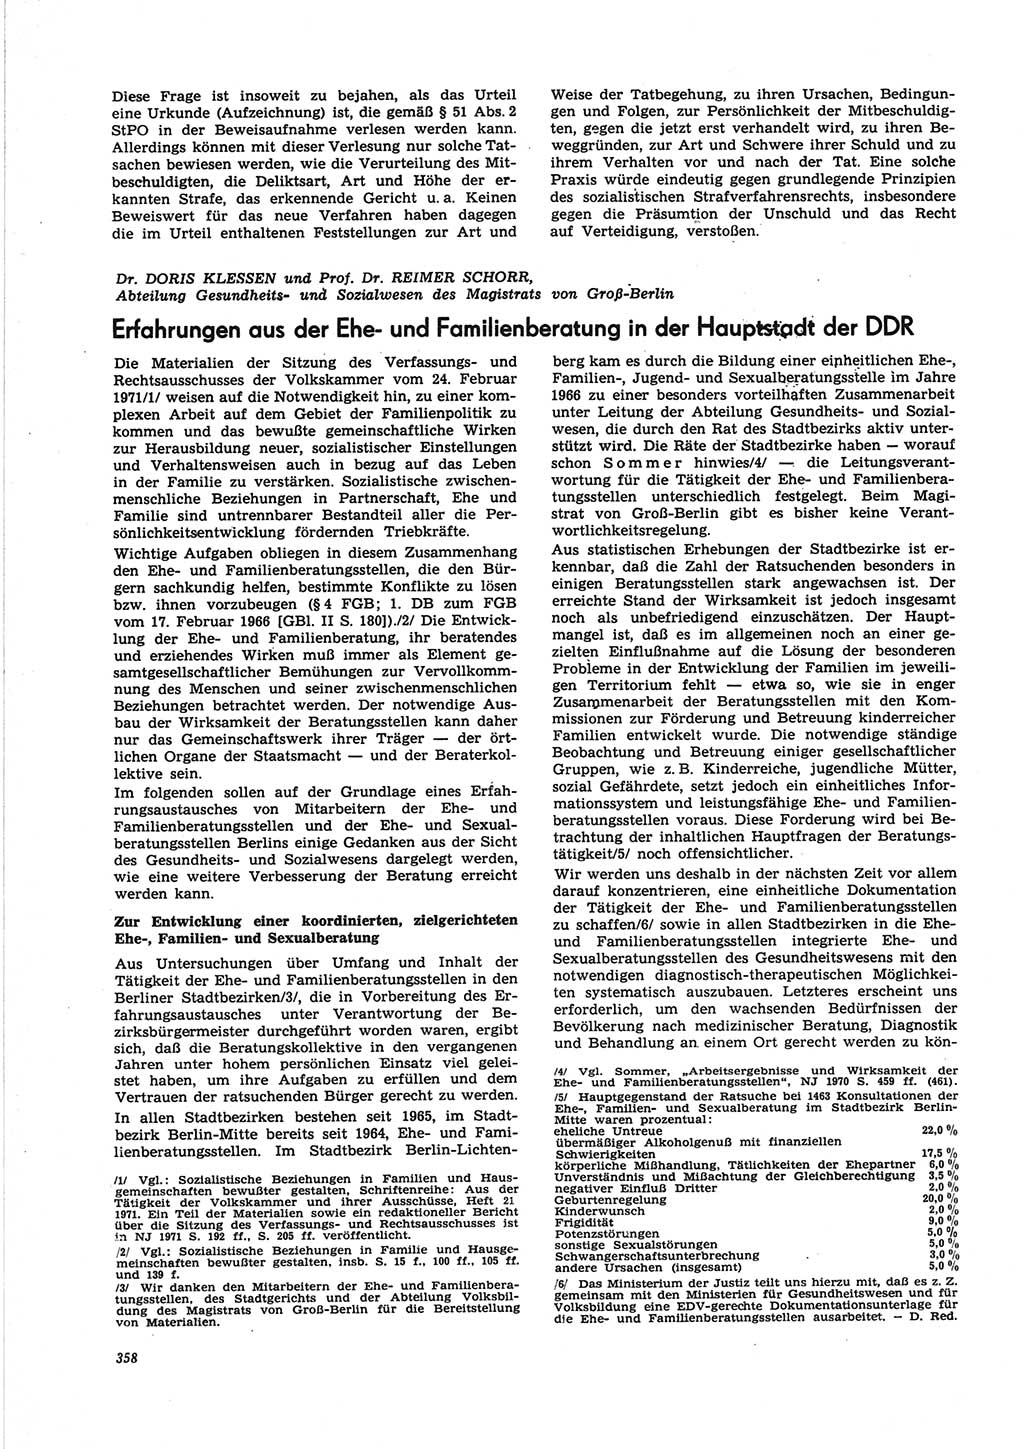 Neue Justiz (NJ), Zeitschrift für Recht und Rechtswissenschaft [Deutsche Demokratische Republik (DDR)], 25. Jahrgang 1971, Seite 358 (NJ DDR 1971, S. 358)